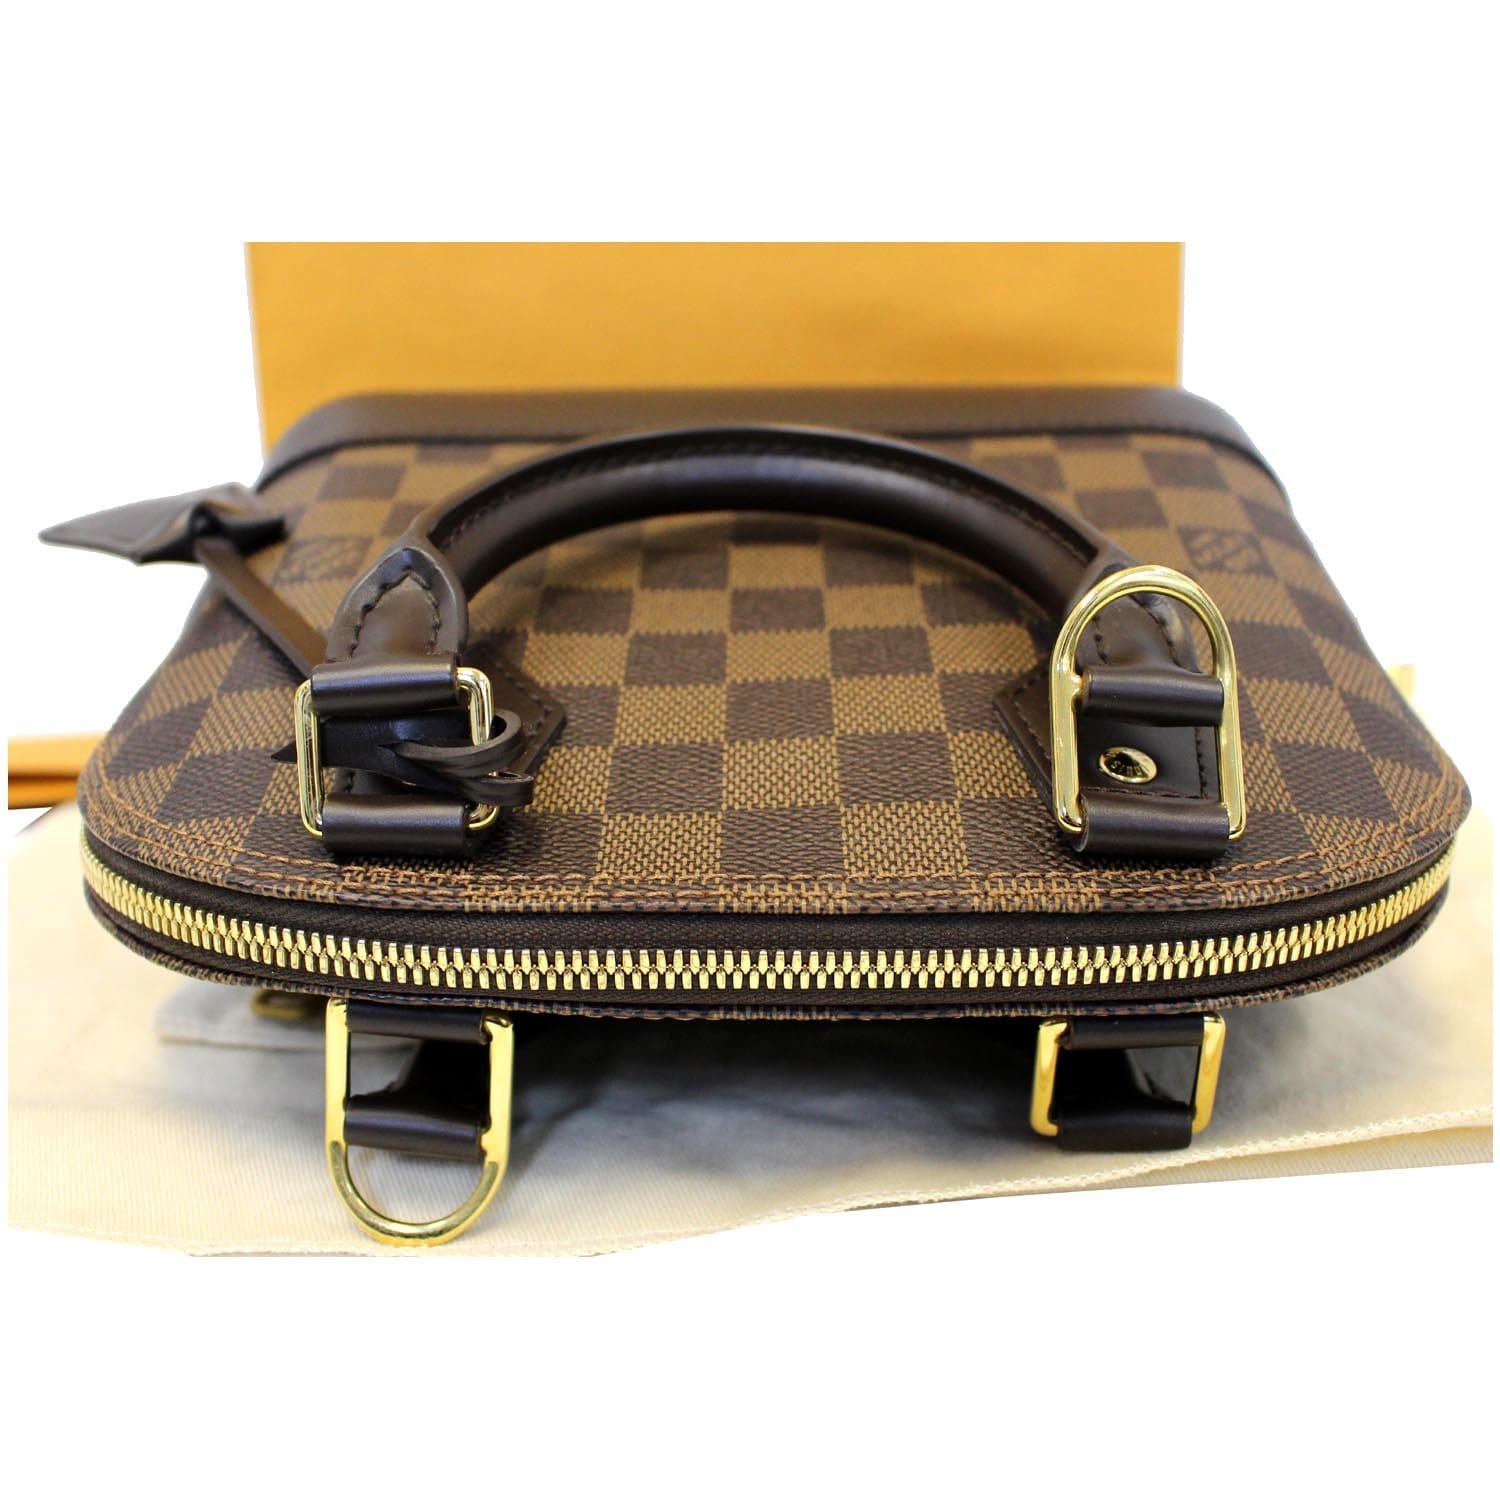 Louis Vuitton Handbag - Dust bag - Staubbeutel - Original